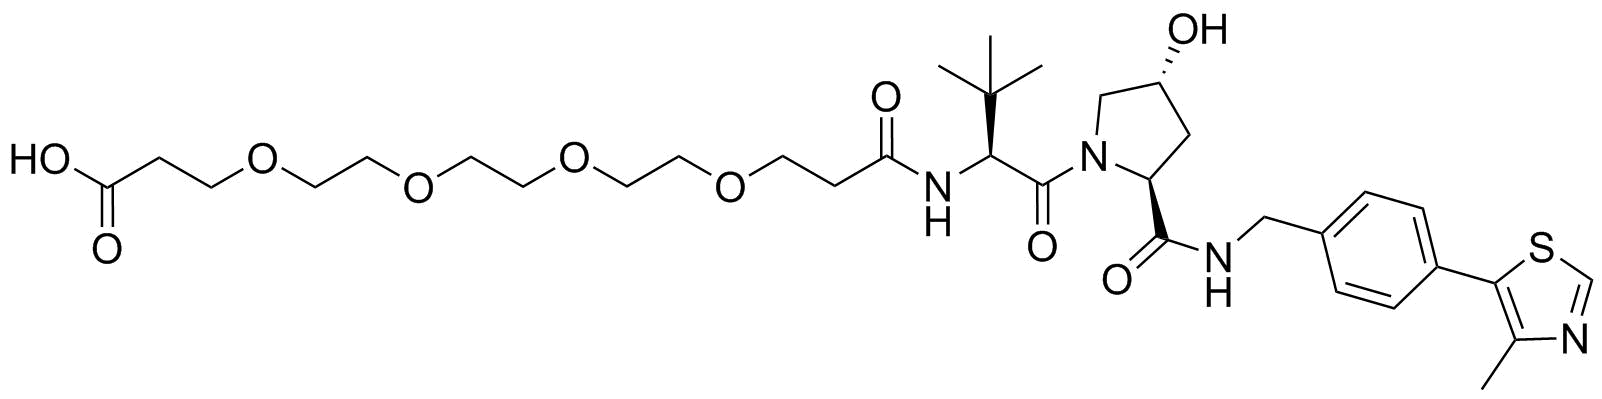 (S,R,S)-AHPC-PEG4-acid